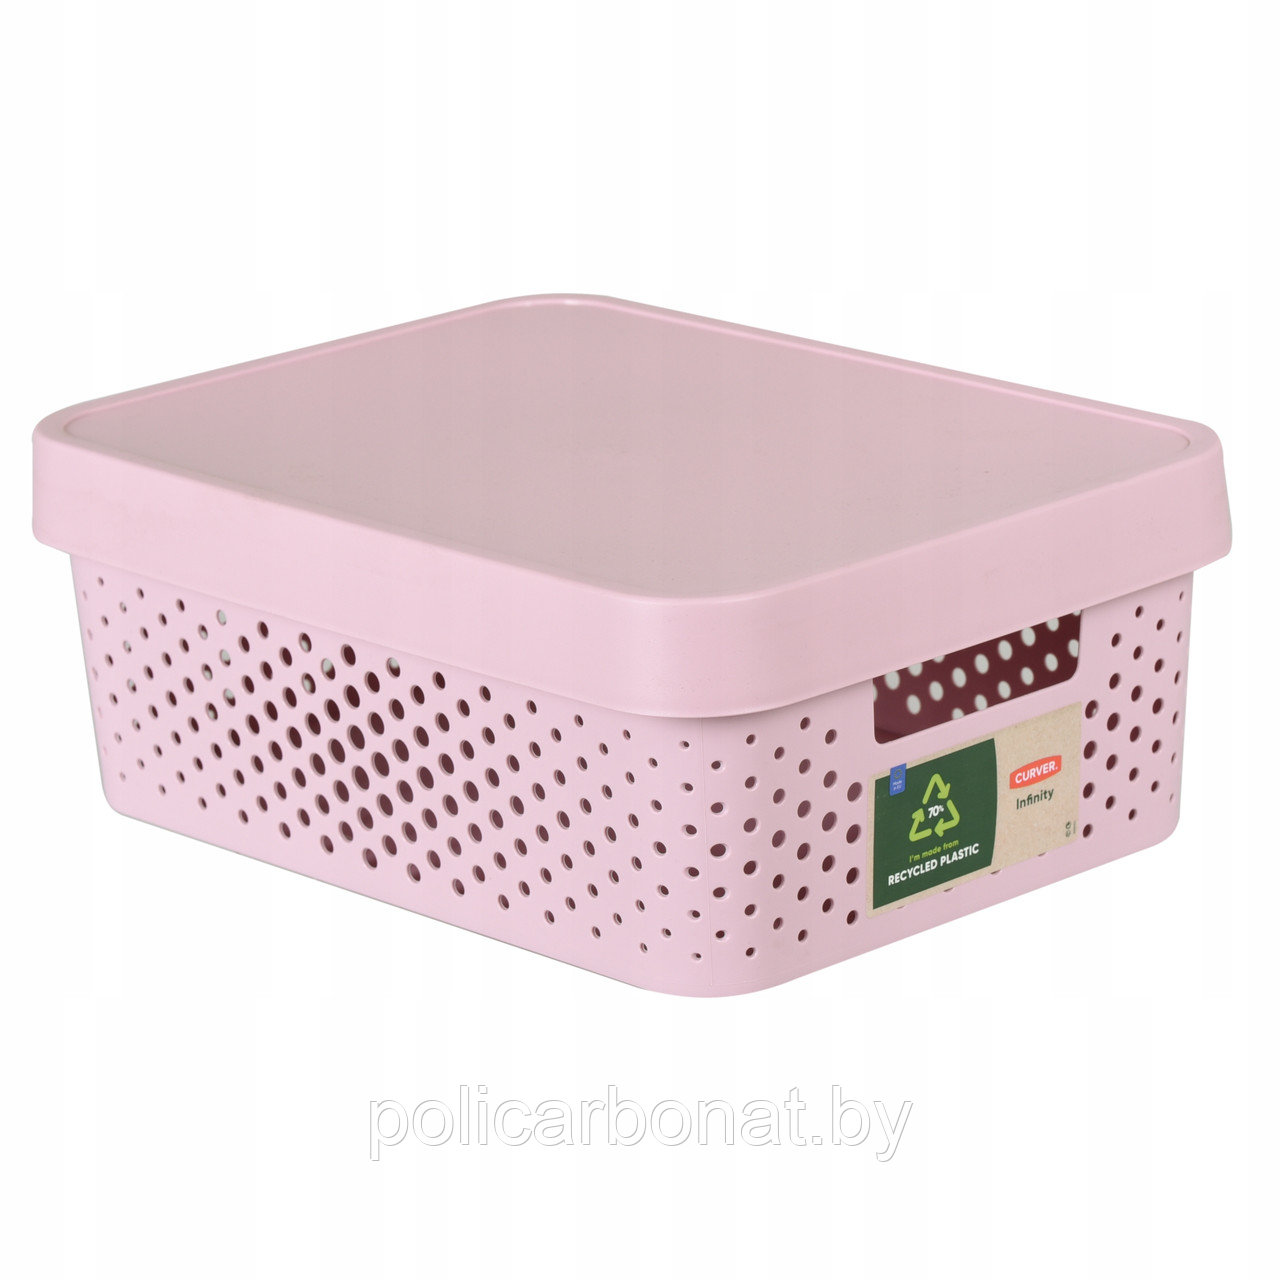 Коробка для хранения с крышкой INFINITY 11L, розовый, фото 1